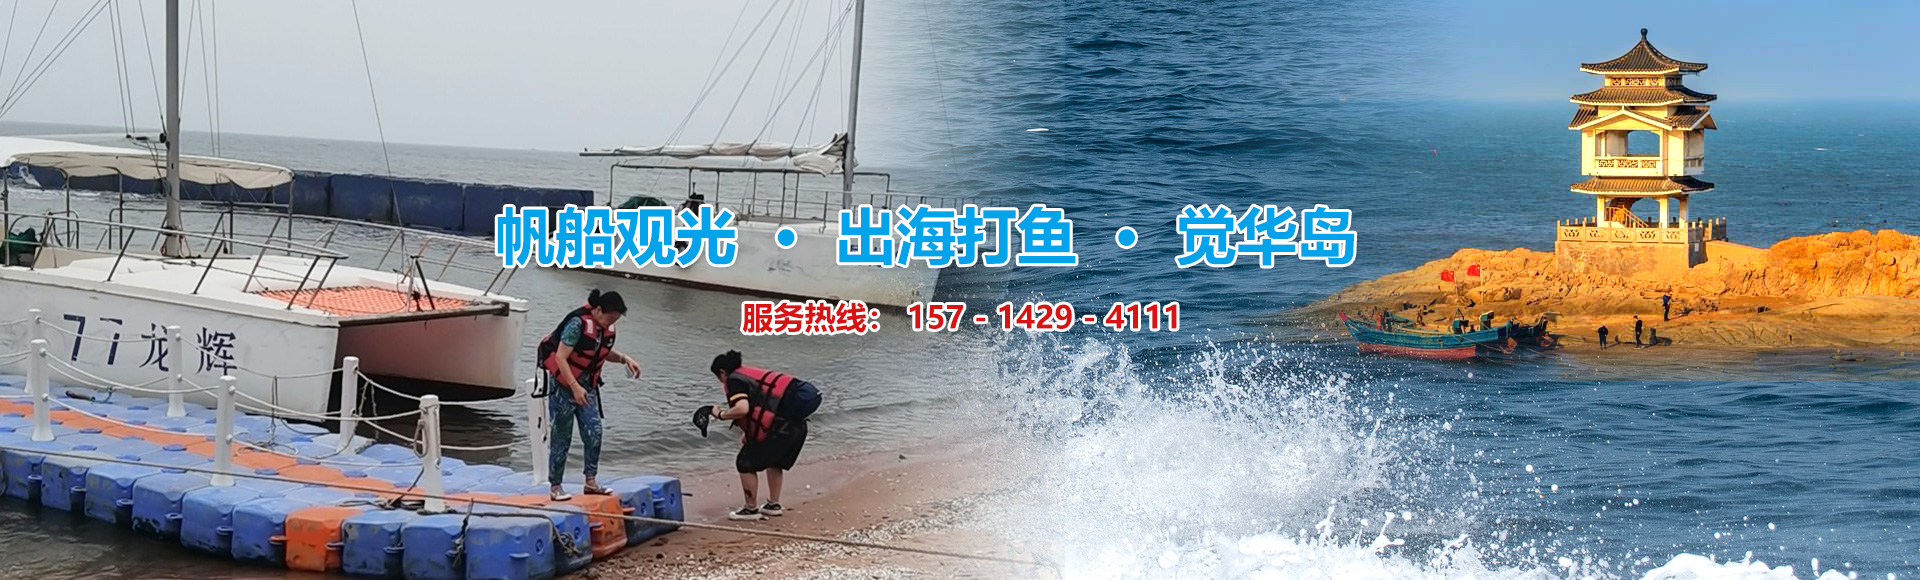 覺華島船票出海打魚